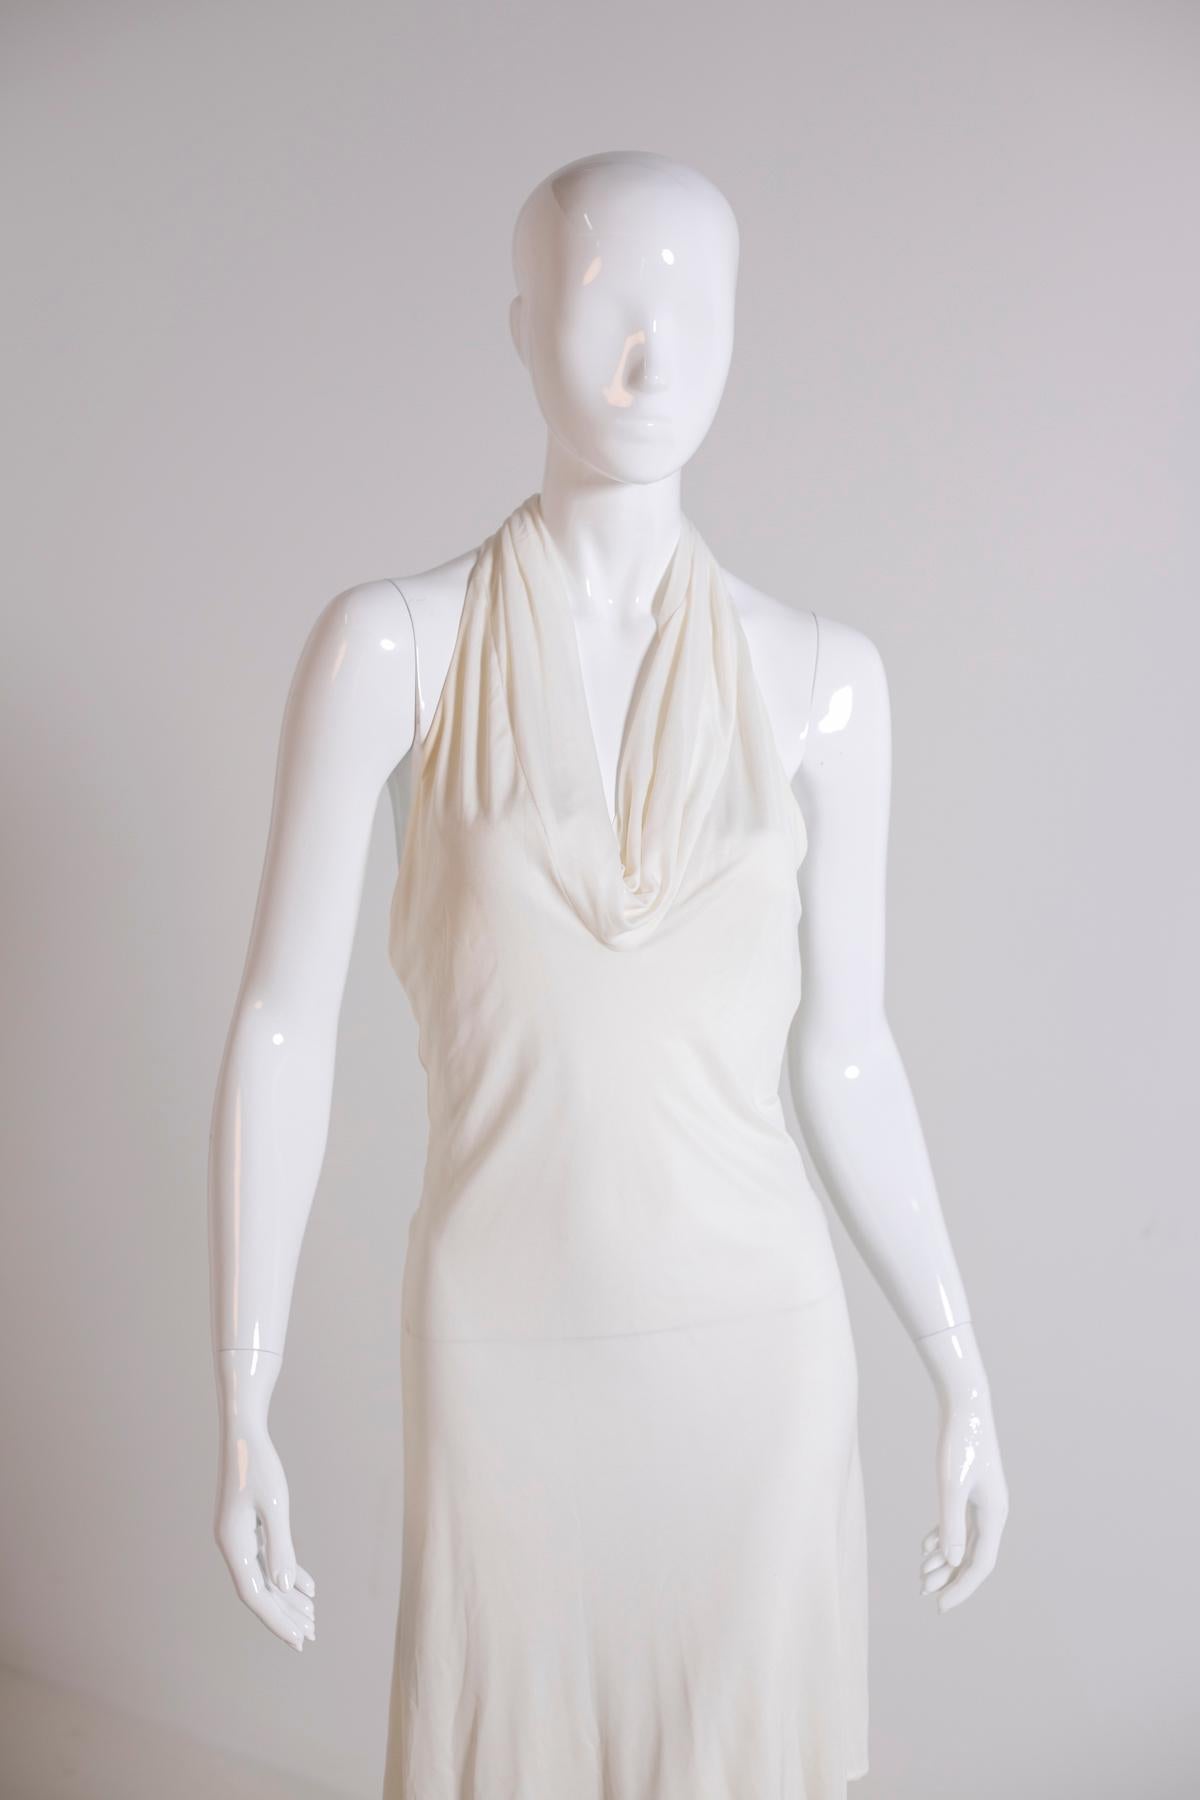 Gianni Versace White Chic Dress 3